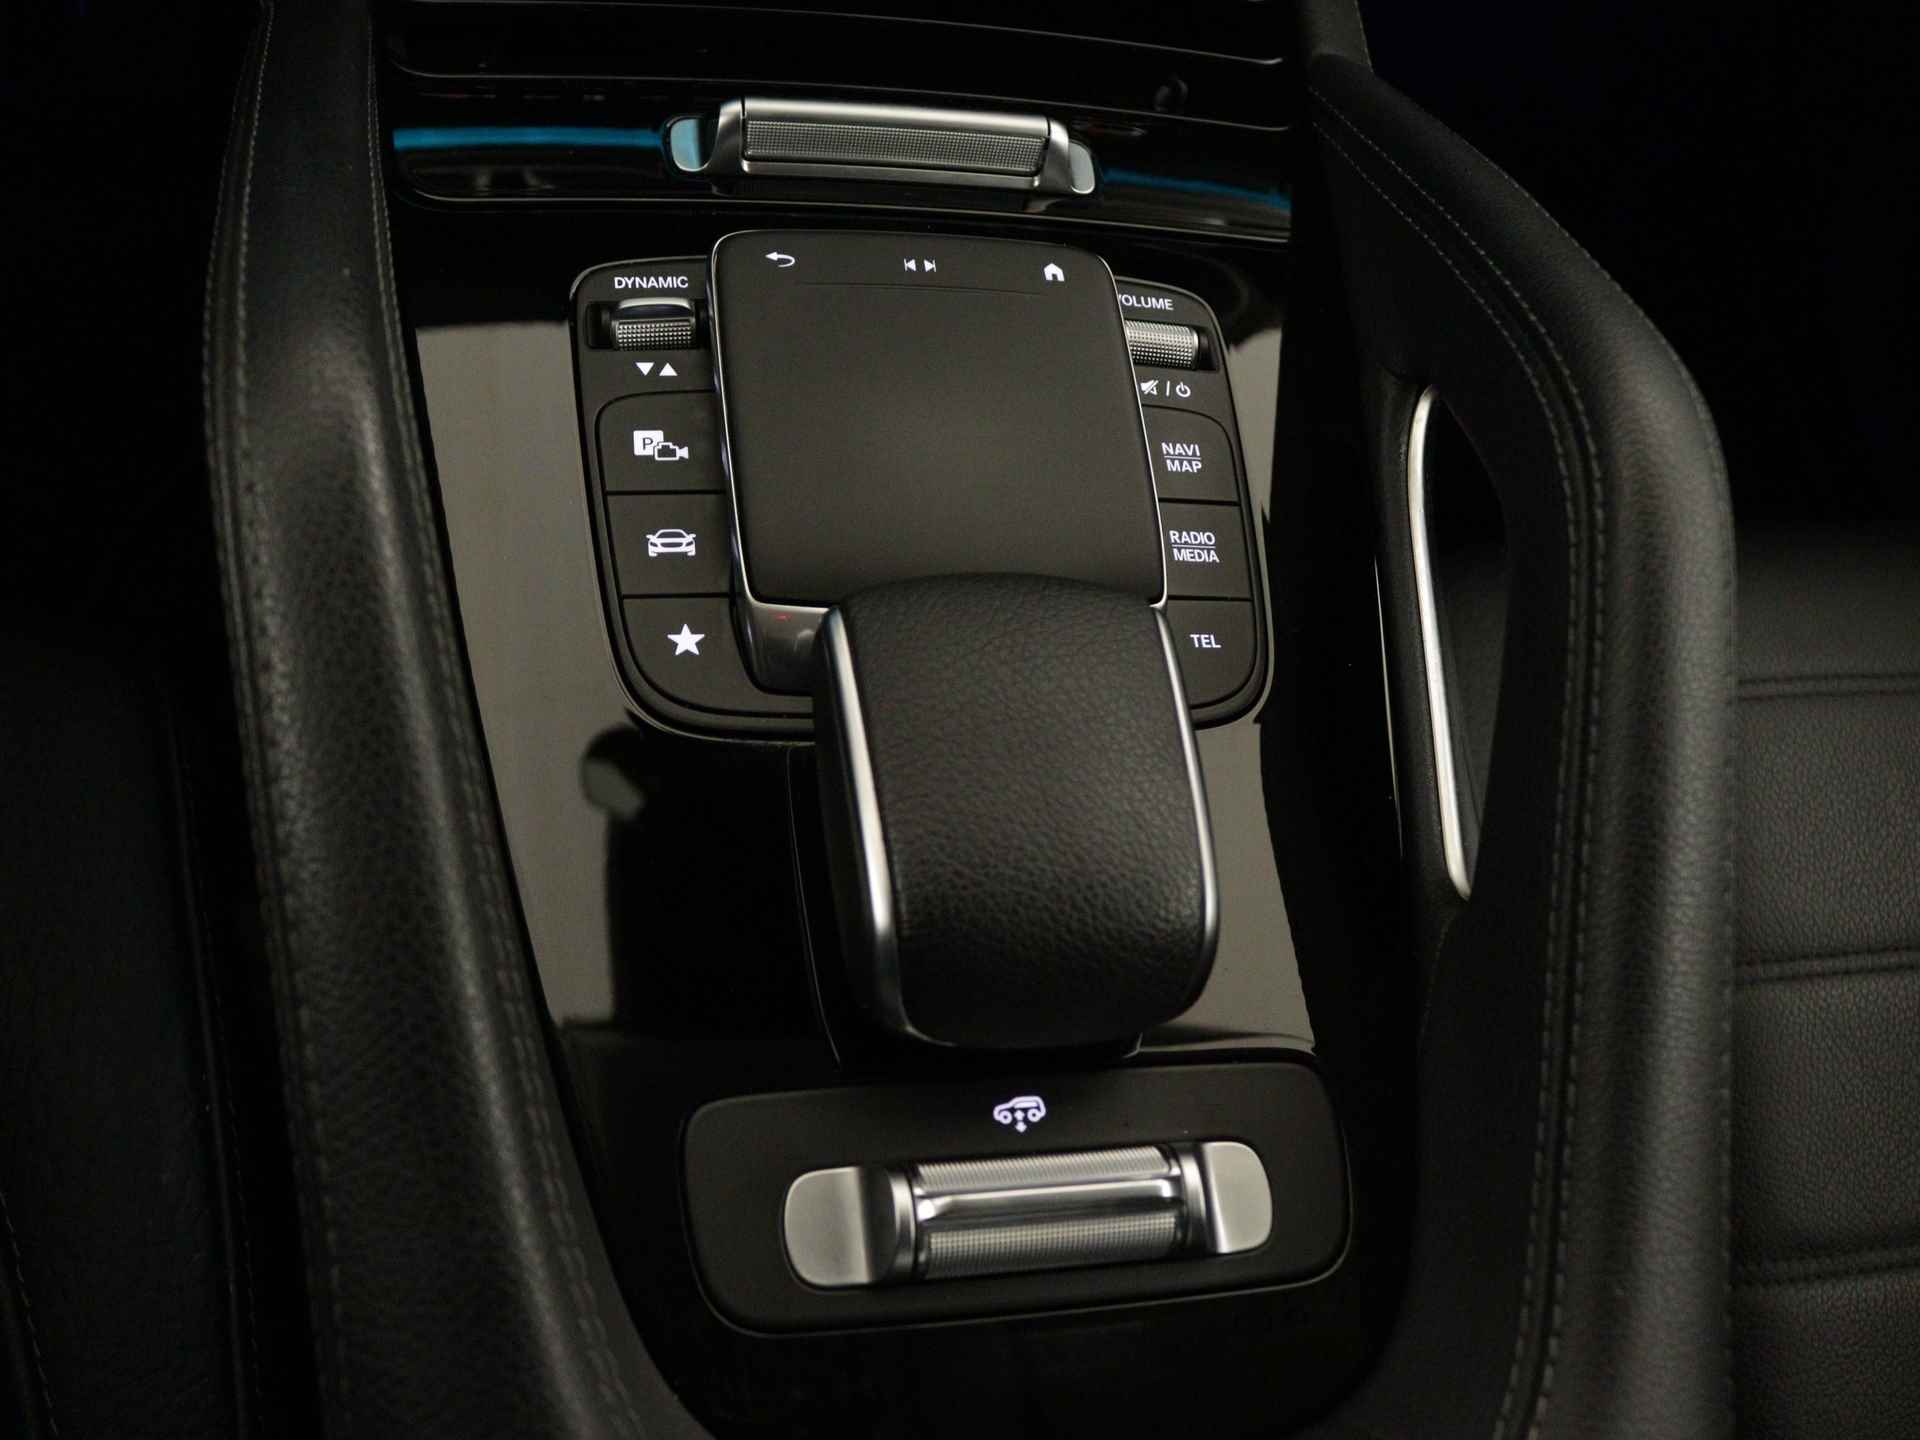 Mercedes-Benz GLE 350 e 4-MATIC AMG Nightpakket Limited 5 spaaks lichtmetalen velgen | Trekhaak | Airmatic | Treeplanken | Alarm klasse 3 |  Augmented Reality | sfeerverlichting | DAB | Parking support | inclusief 24 maanden MB Certified garantie voor europa - 34/45